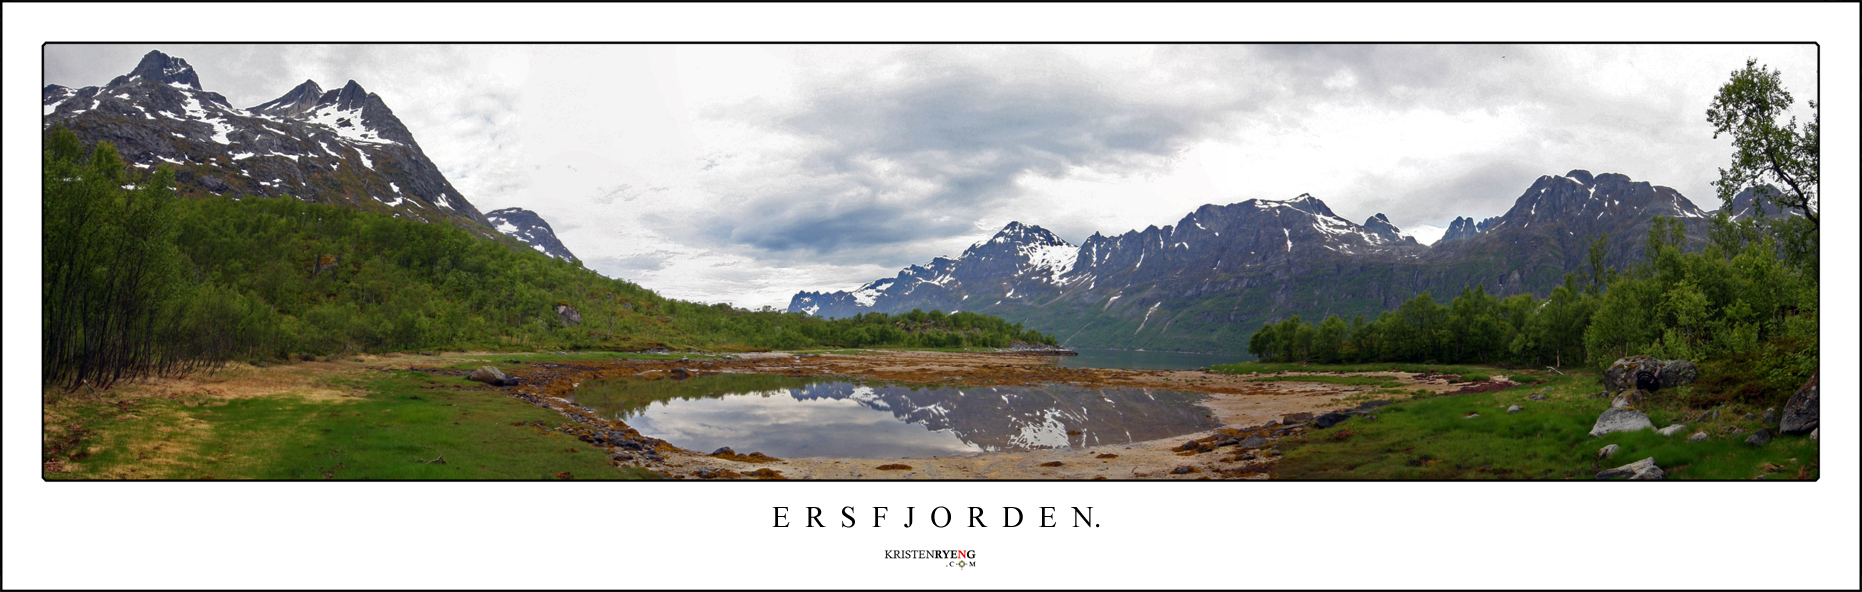 ErsfjordenPanorama2.jpg - Utsikt langs Ersfjorden. Ersfjordtraversen ses i bakgrunn til høyre. Leirholstinden i venstre billedkant.